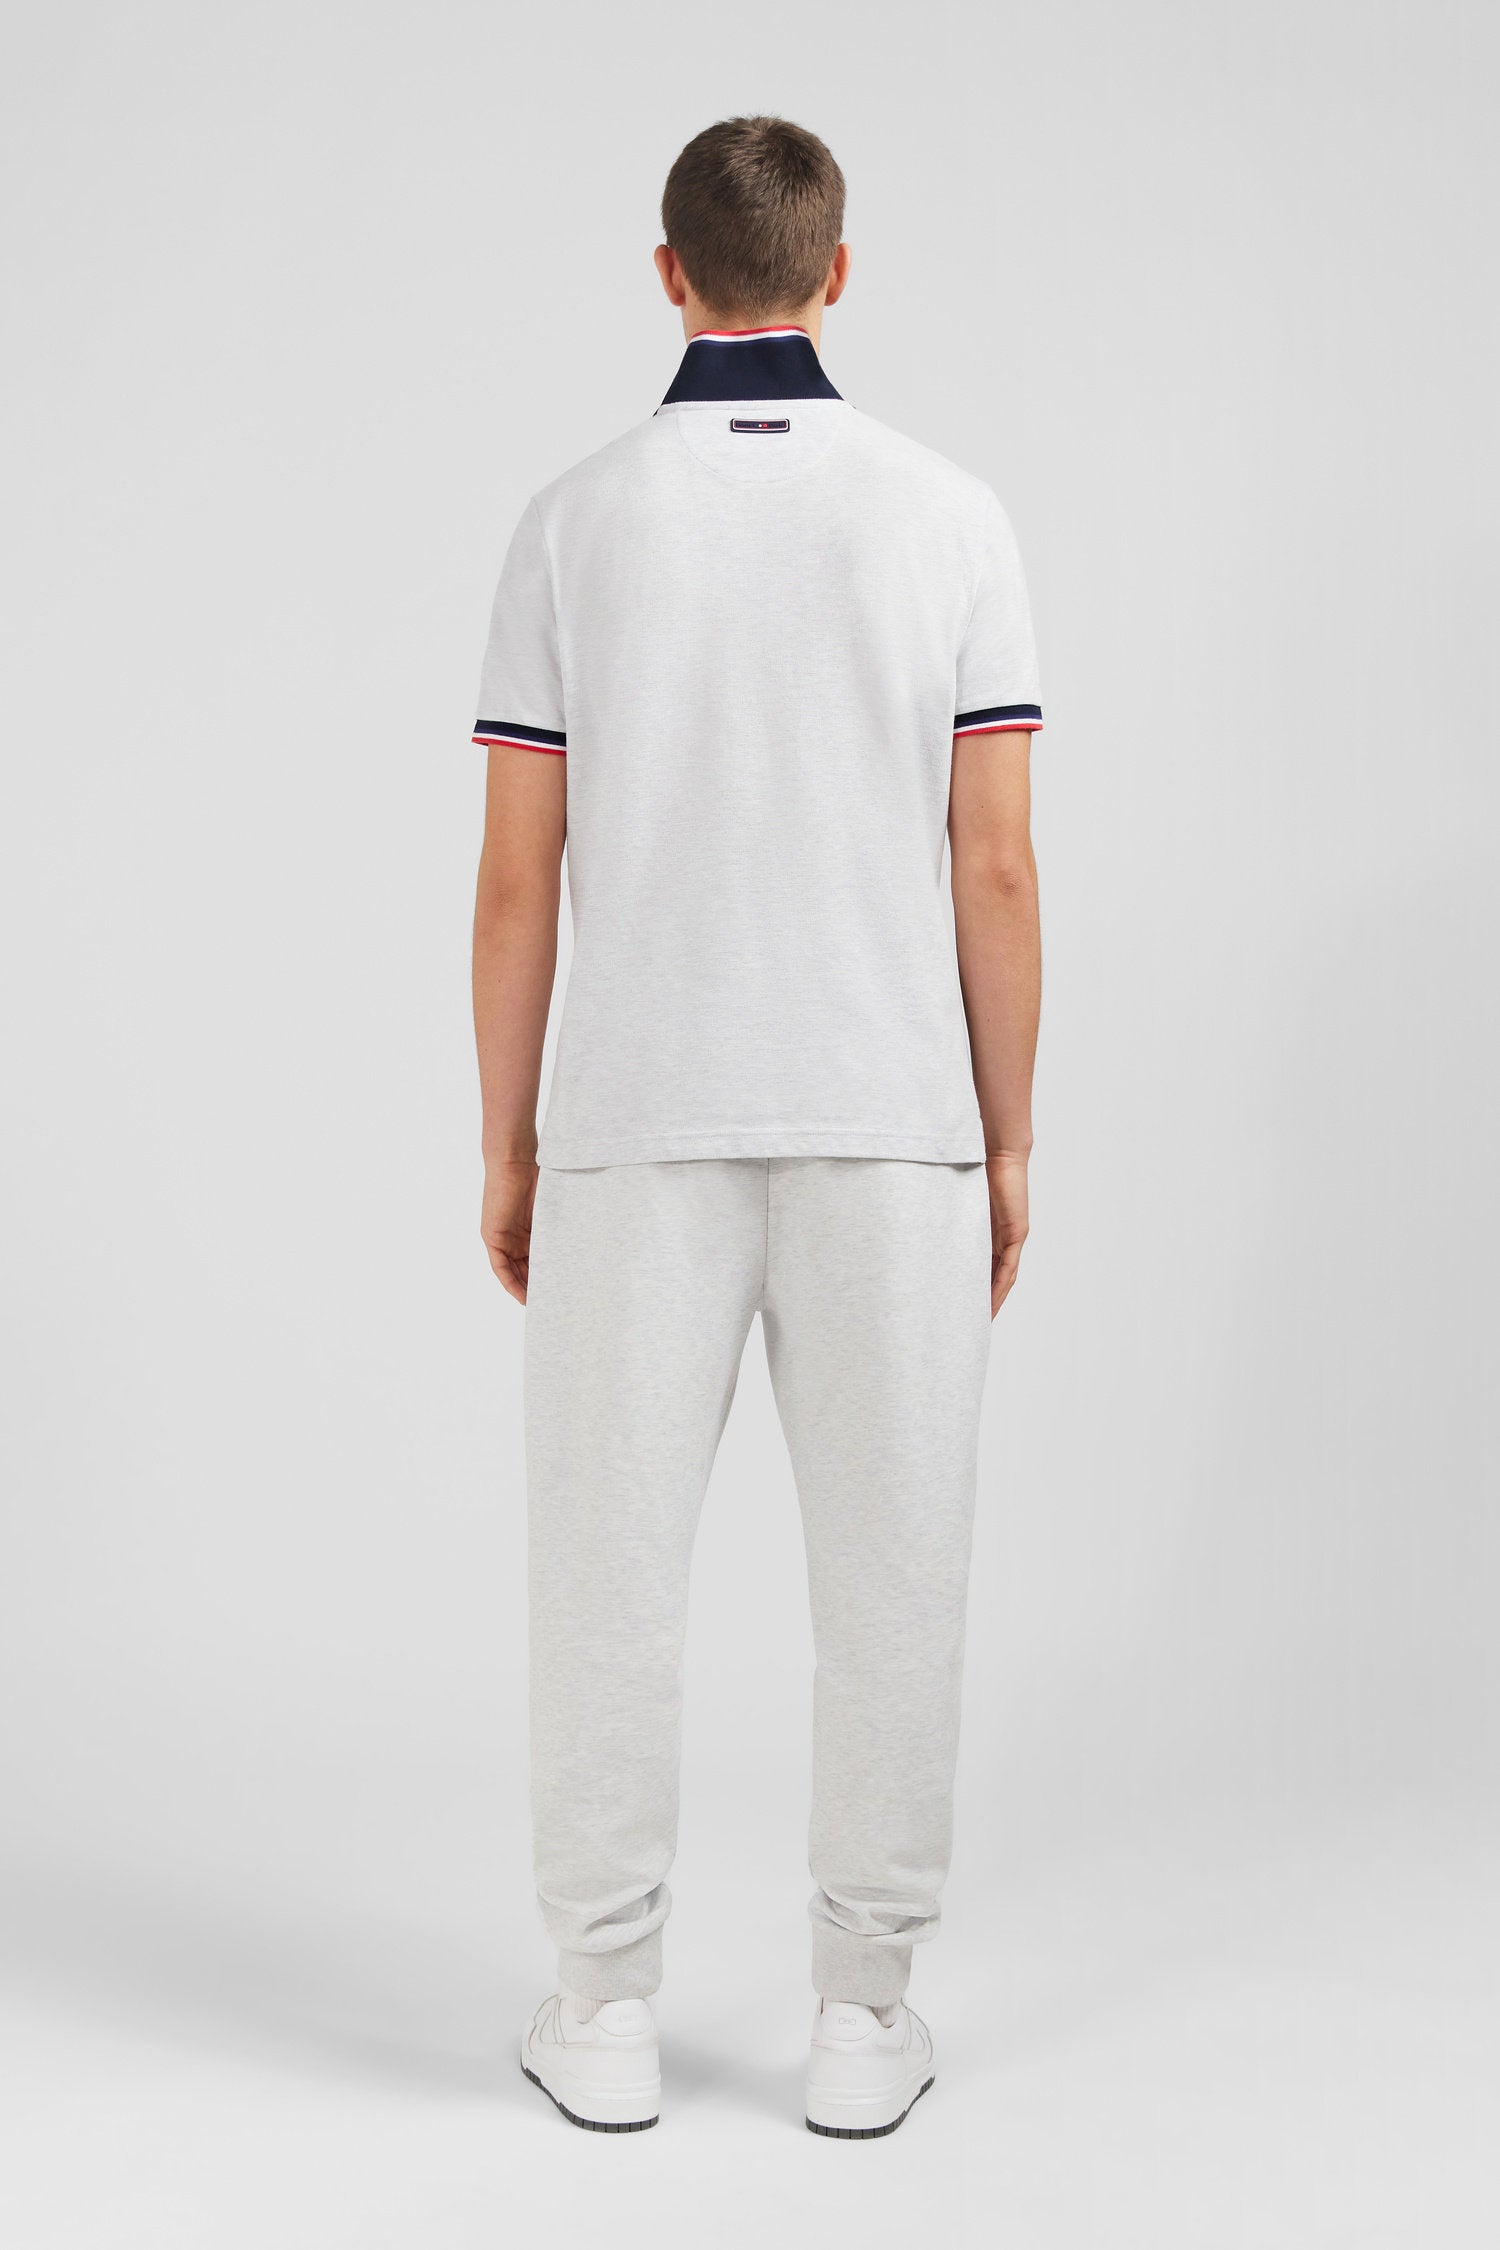 Grey Short-Sleeved Colour-Block Polo Shirt_E24MAIPC0020_GRC7_04